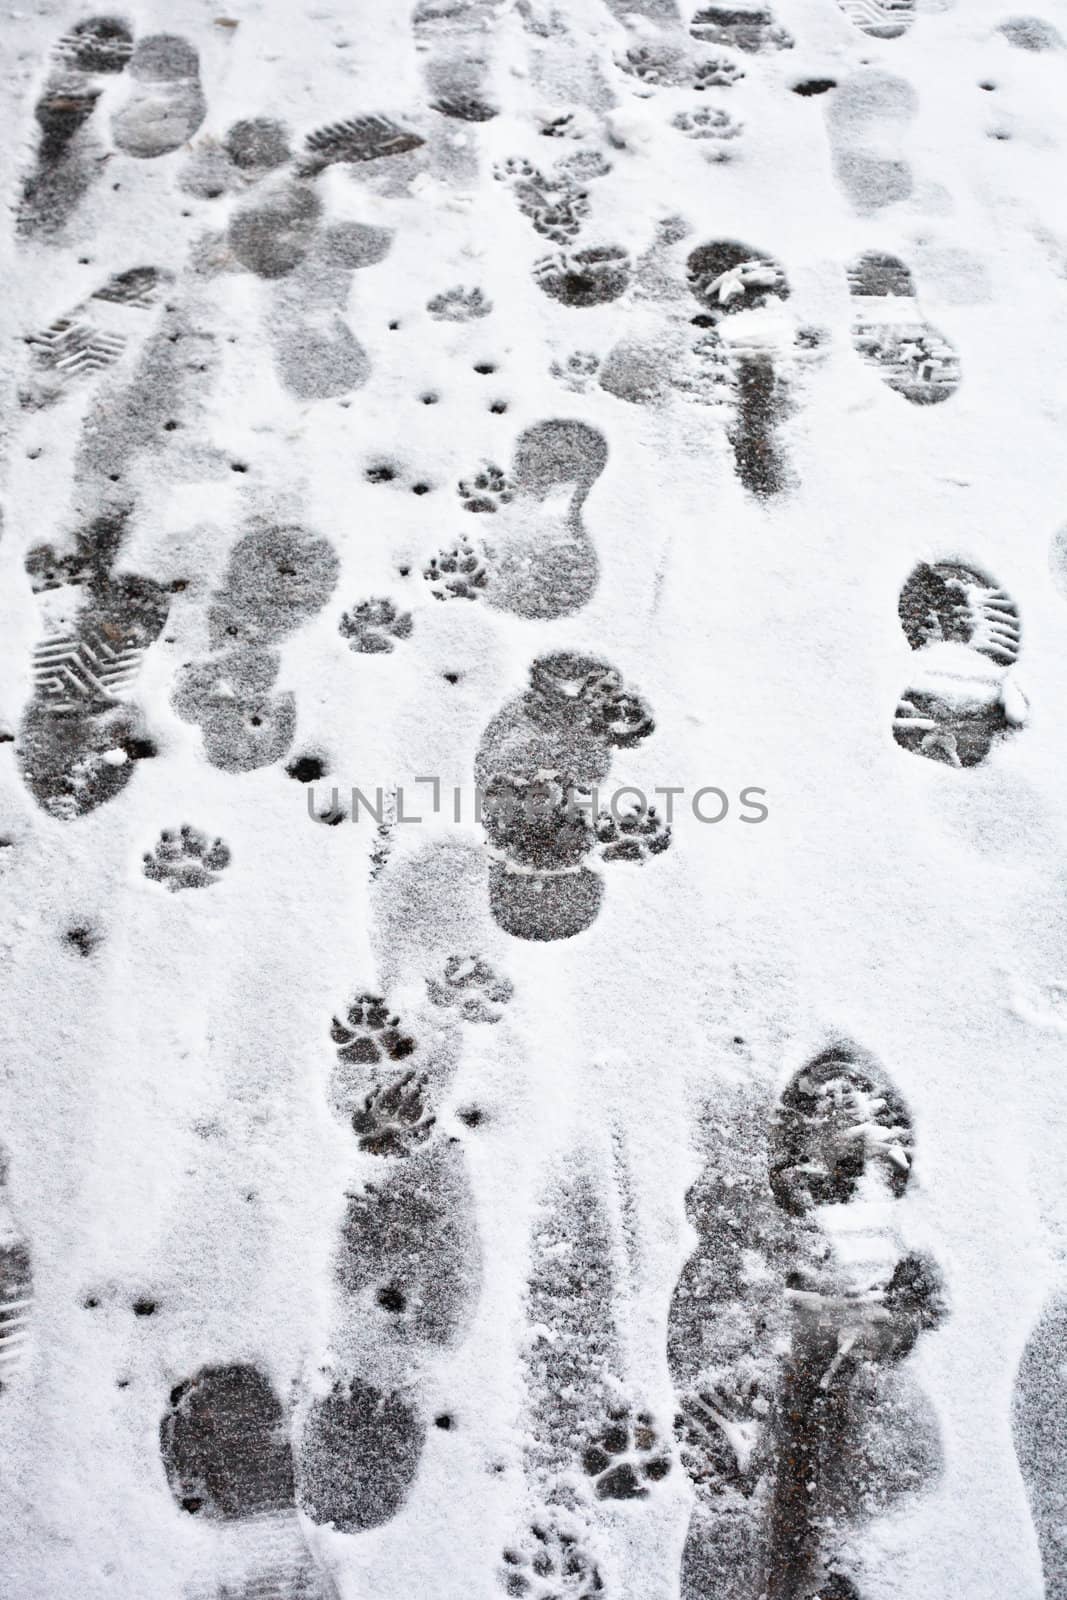 Footprints by trgowanlock